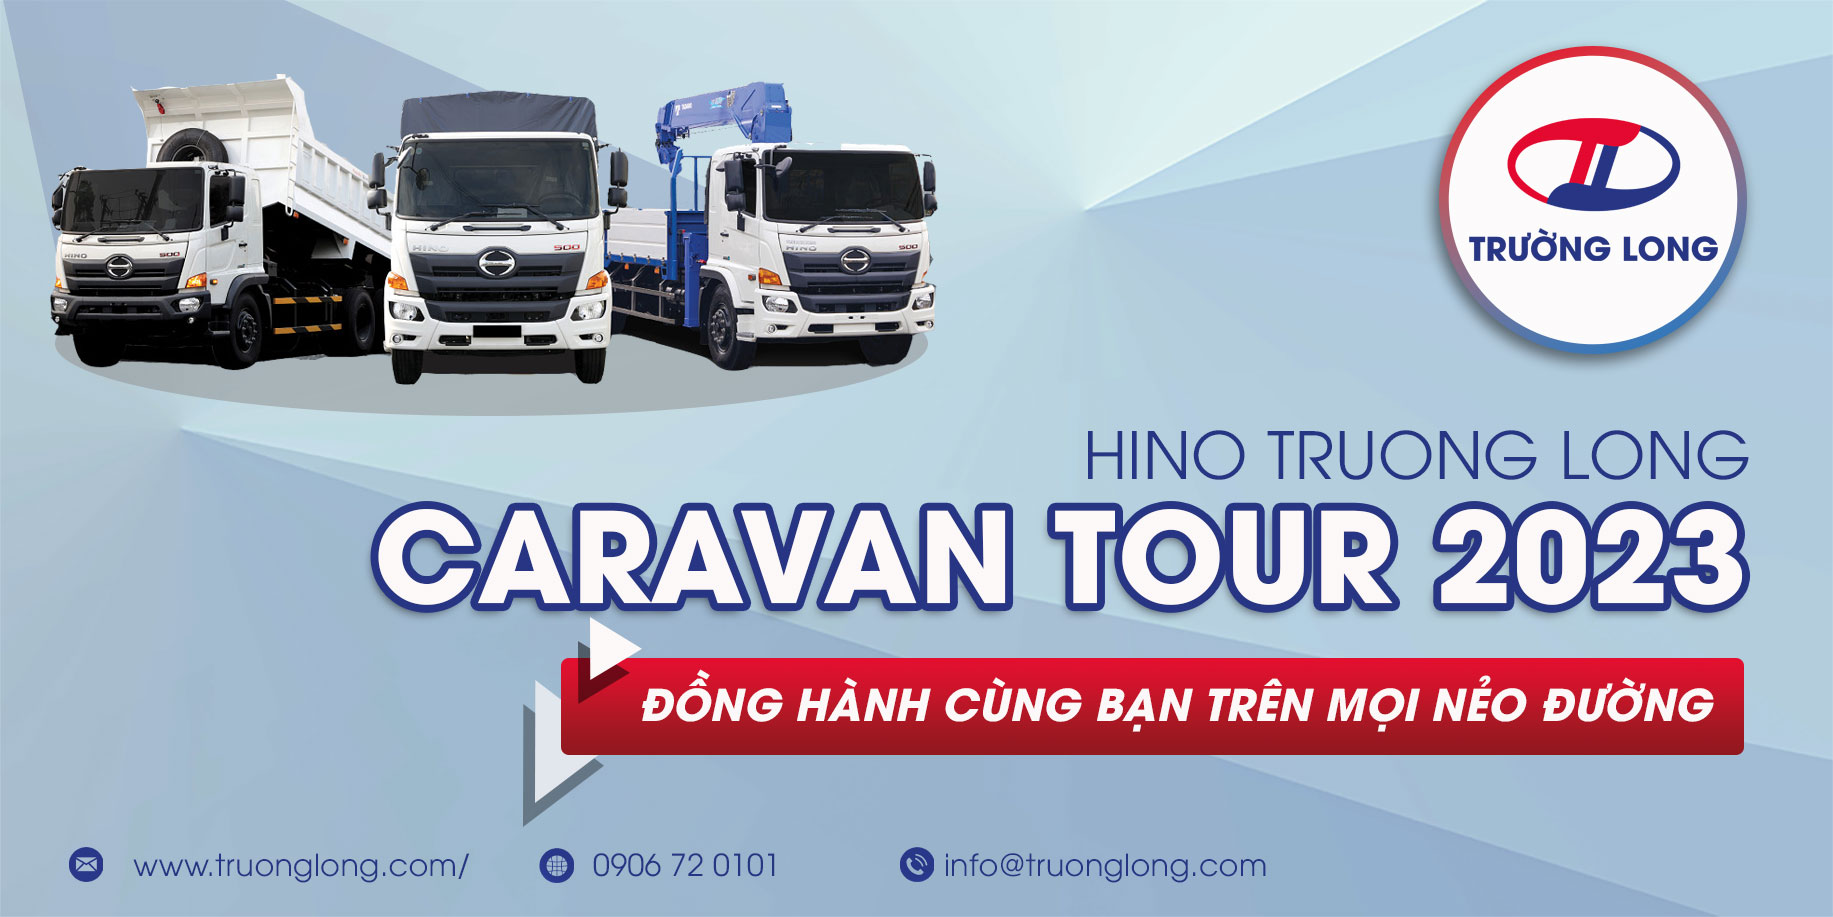 Hino Trường Long Caravan Tour 2023 Bảo dưỡng lưu động